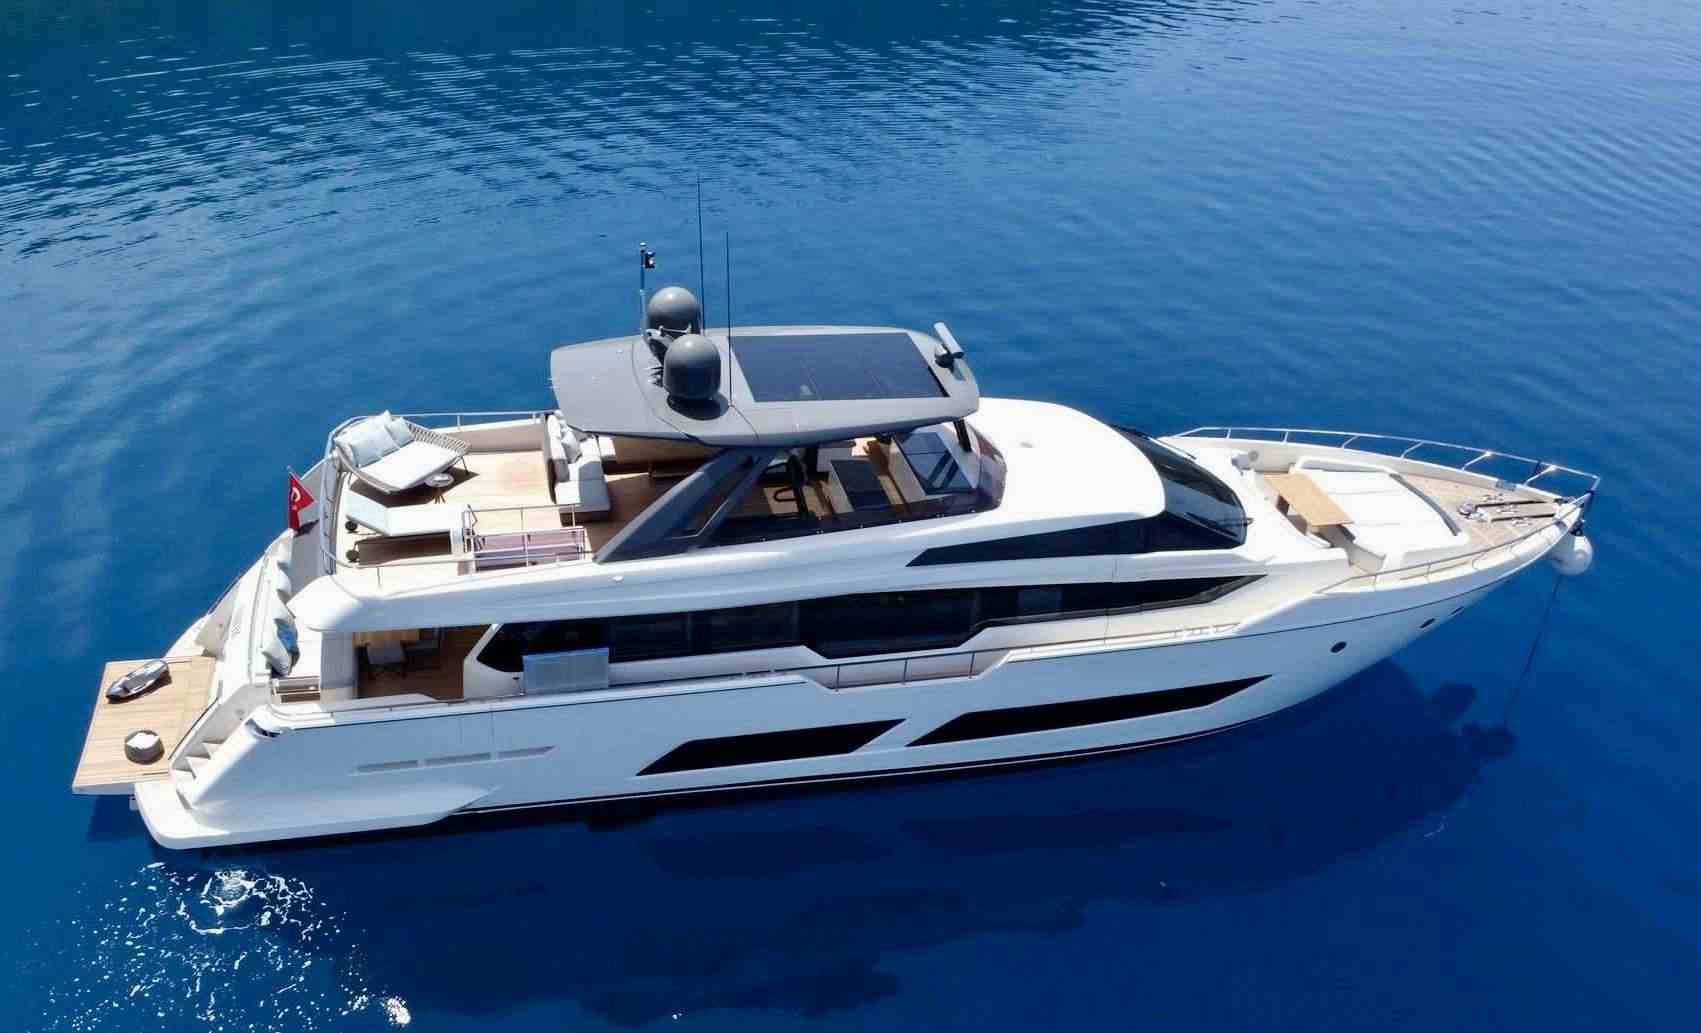 SHERO - Alimos Yacht Charter & Boat hire in Greece & Turkey 1